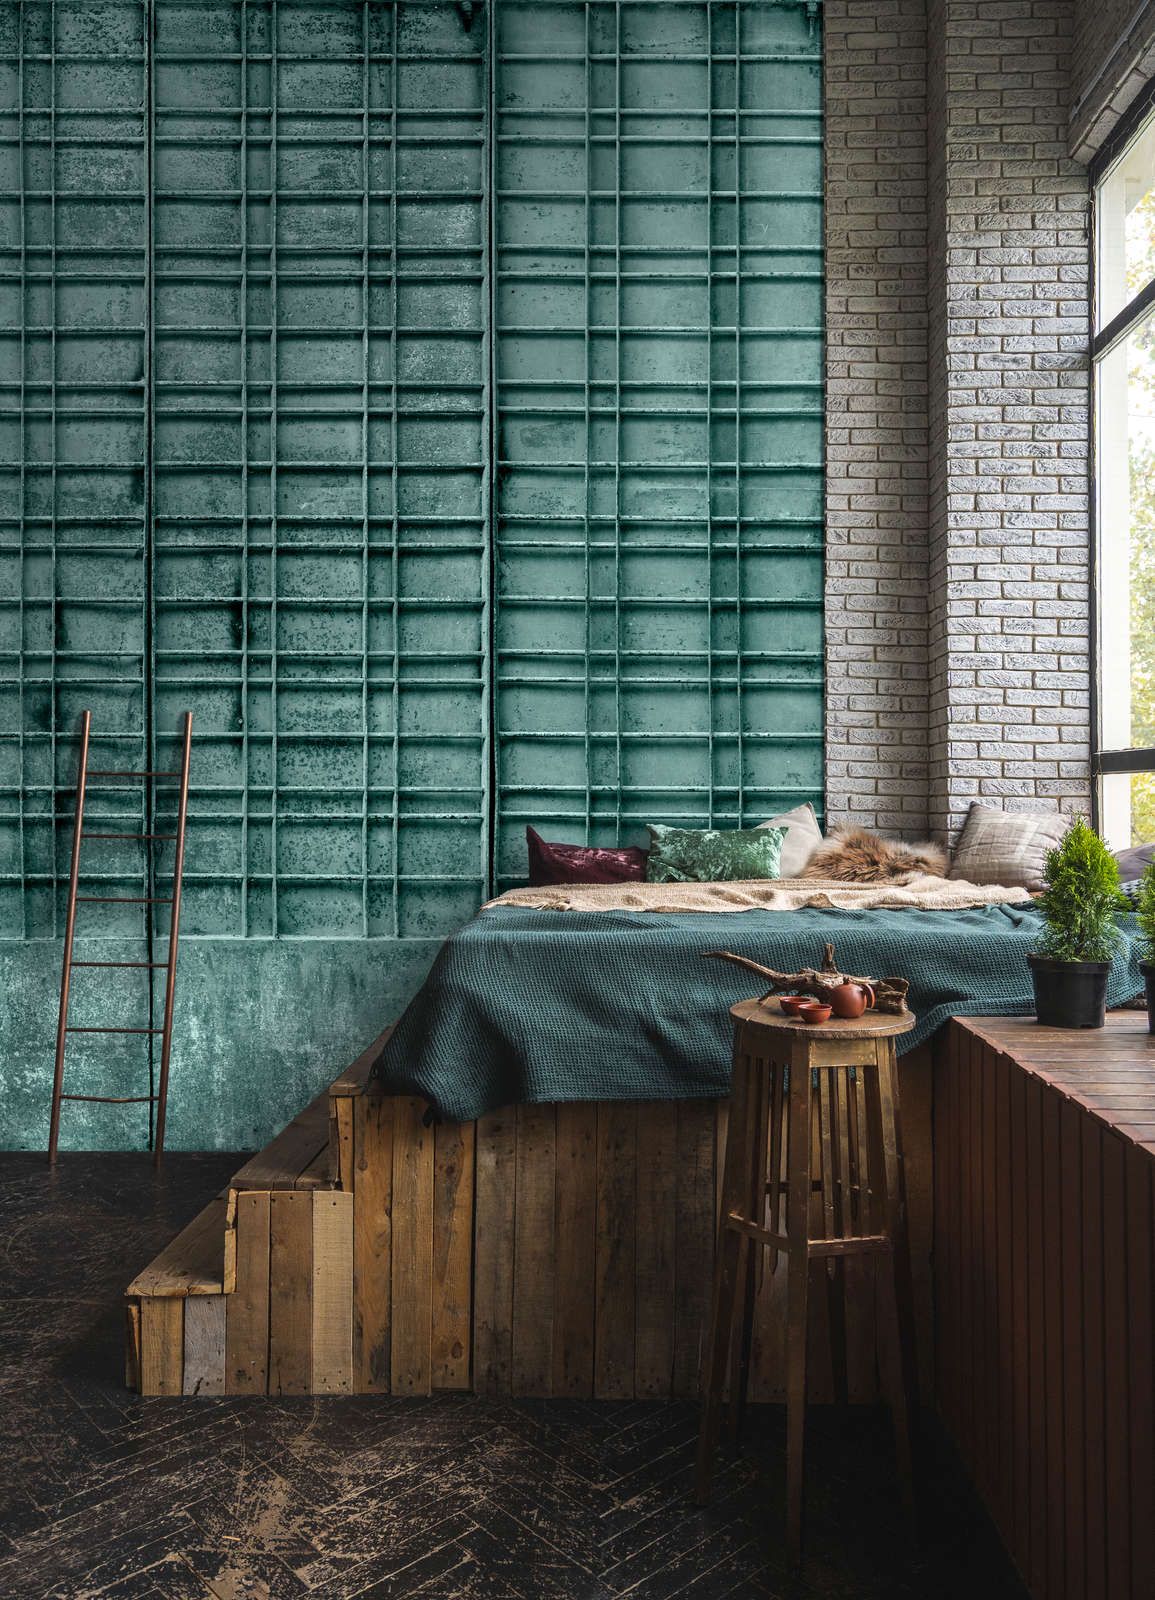             Fotomural »bangalore« - Primer plano de una puerta de metal color petróleo con decoraciones rectangulares - tejido no tejido mate, liso
        